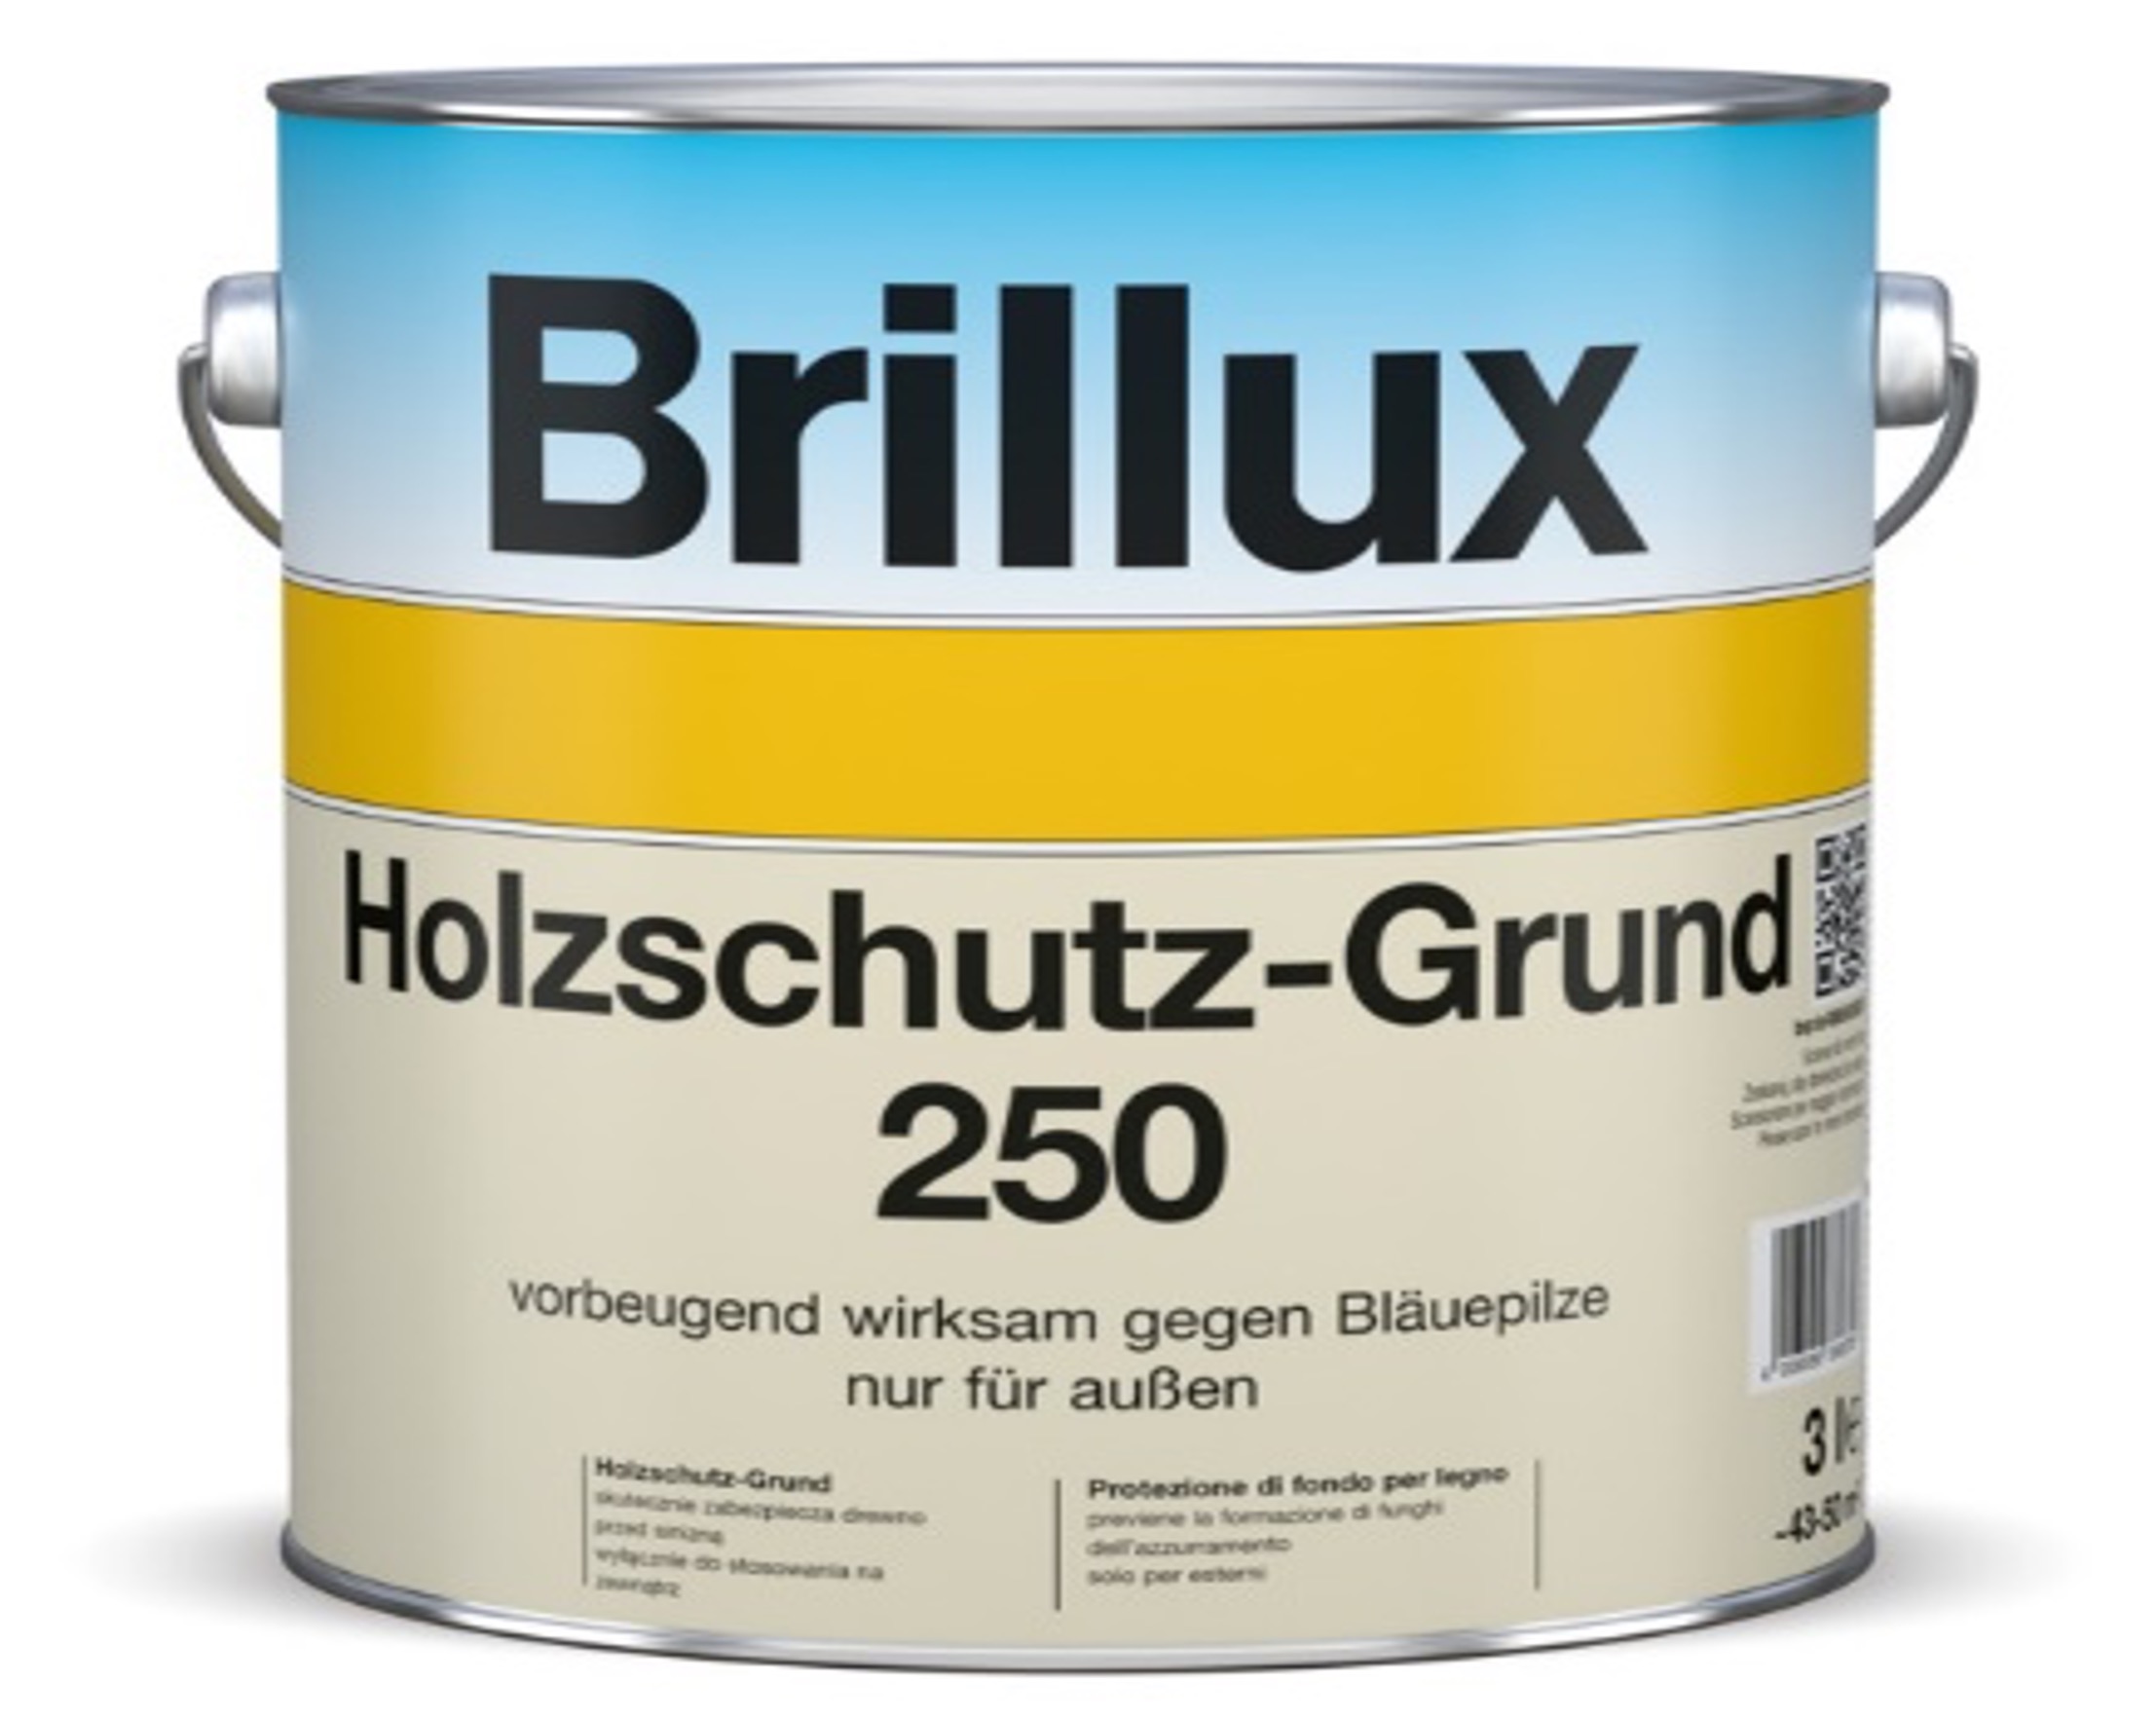 Brillux Holzschutz Grund 250 Holzschutzmittel Image